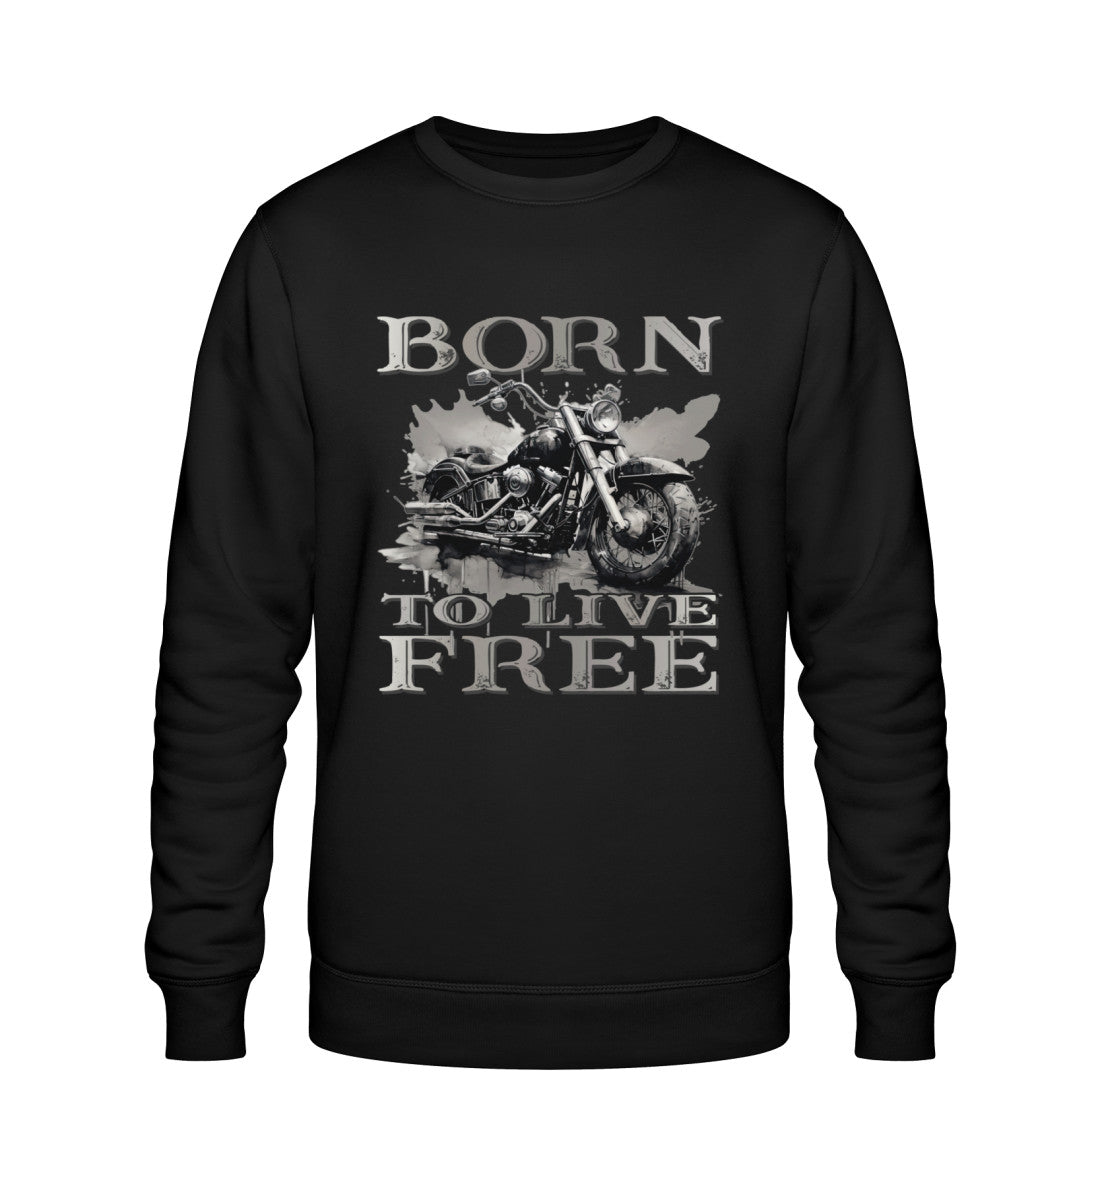 Ein Biker Sweatshirt für Motorradfahrer von Wingbikers mit dem Aufdruck,  Born to Live Free, in schwarz.  